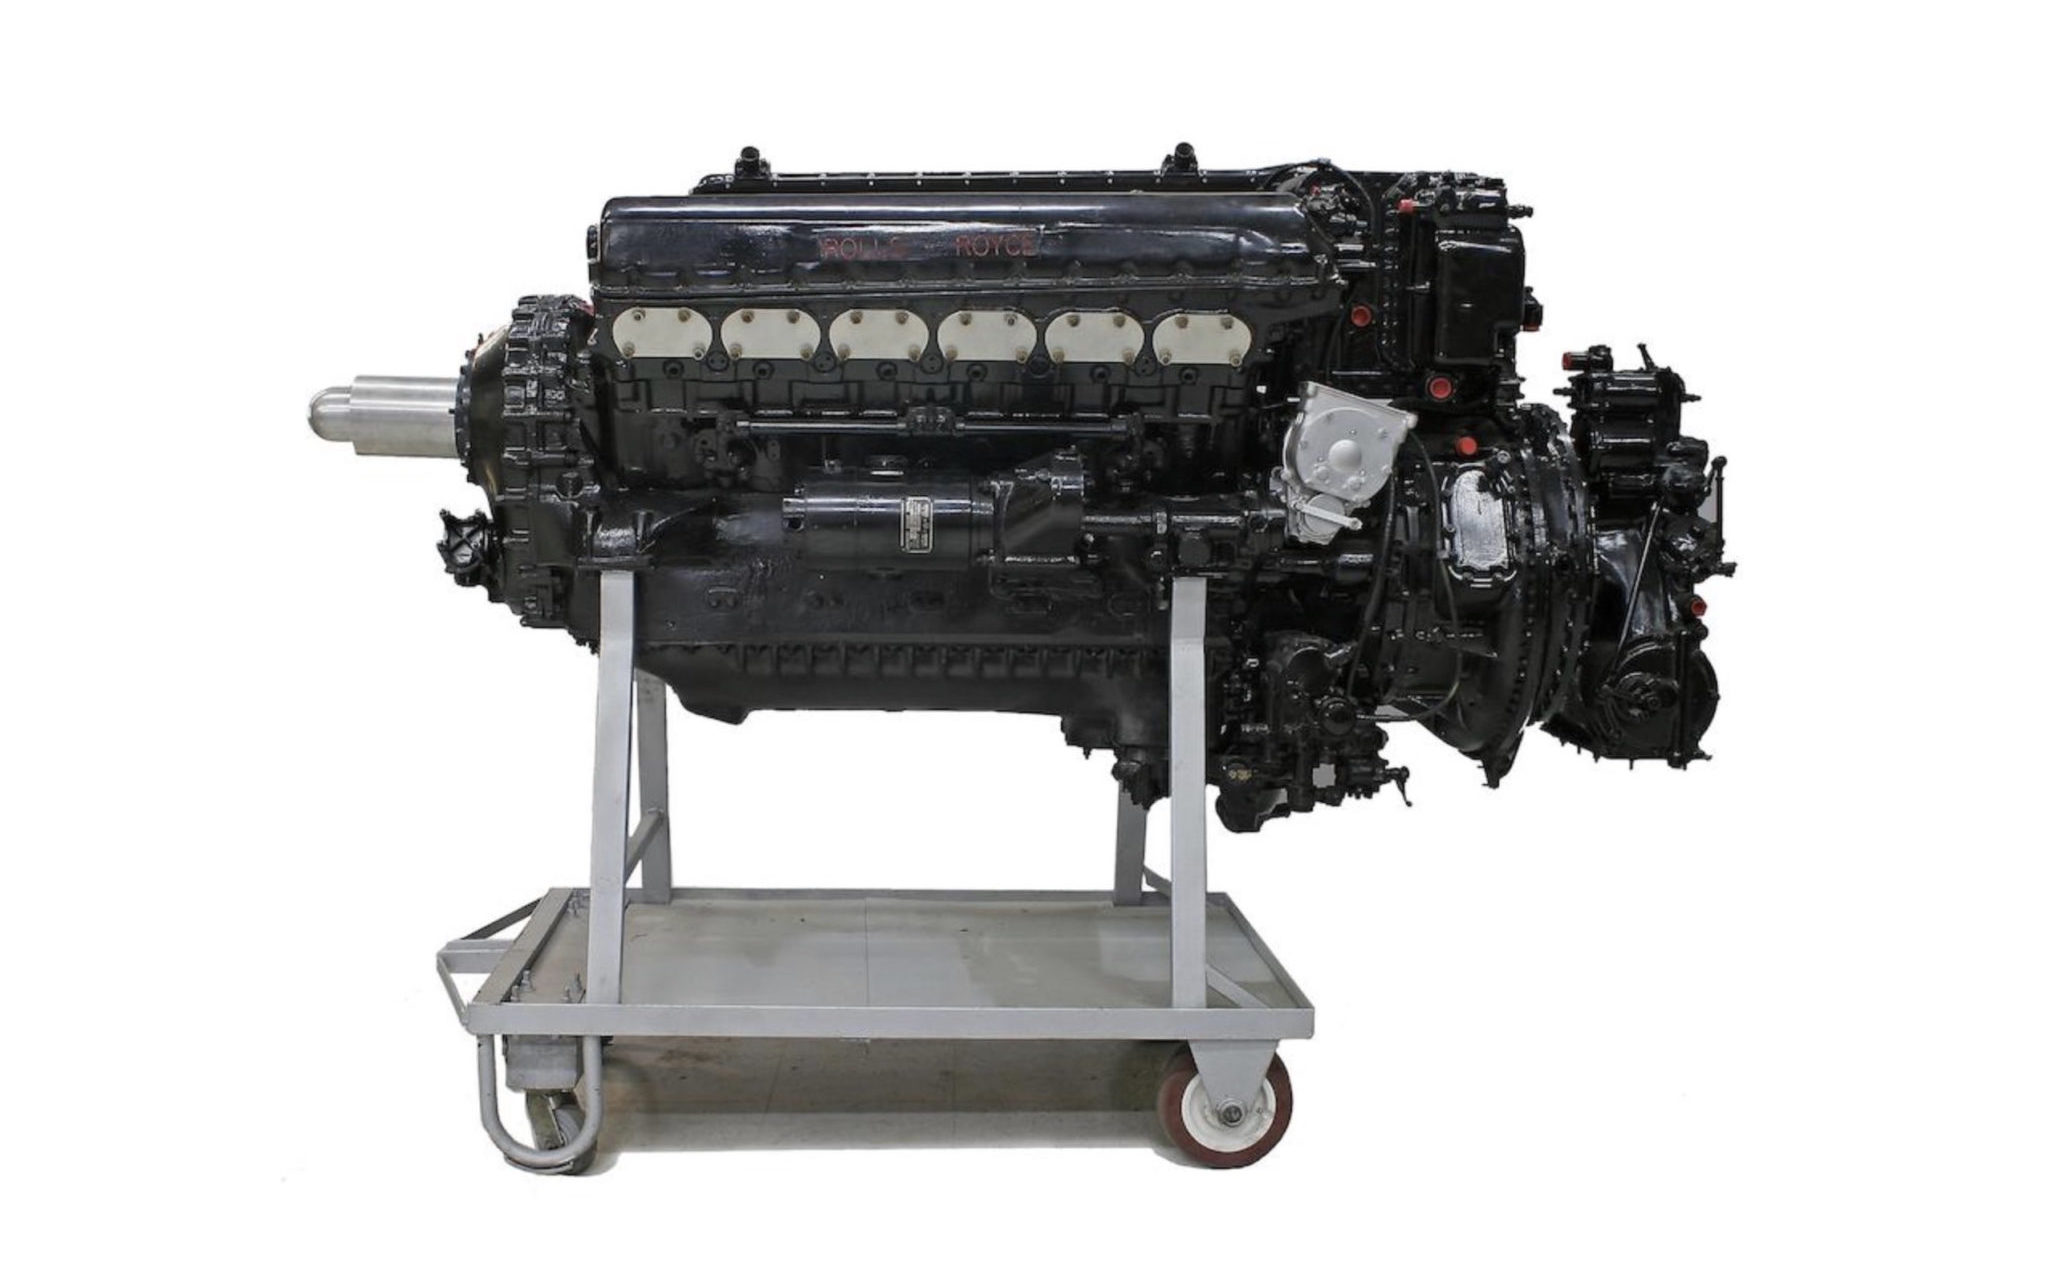 Nhanh tay đặt hàng động cơ Griffon V12 "huyền thoại" của Rolls-Royce đang được bán với 65 ngàn đô